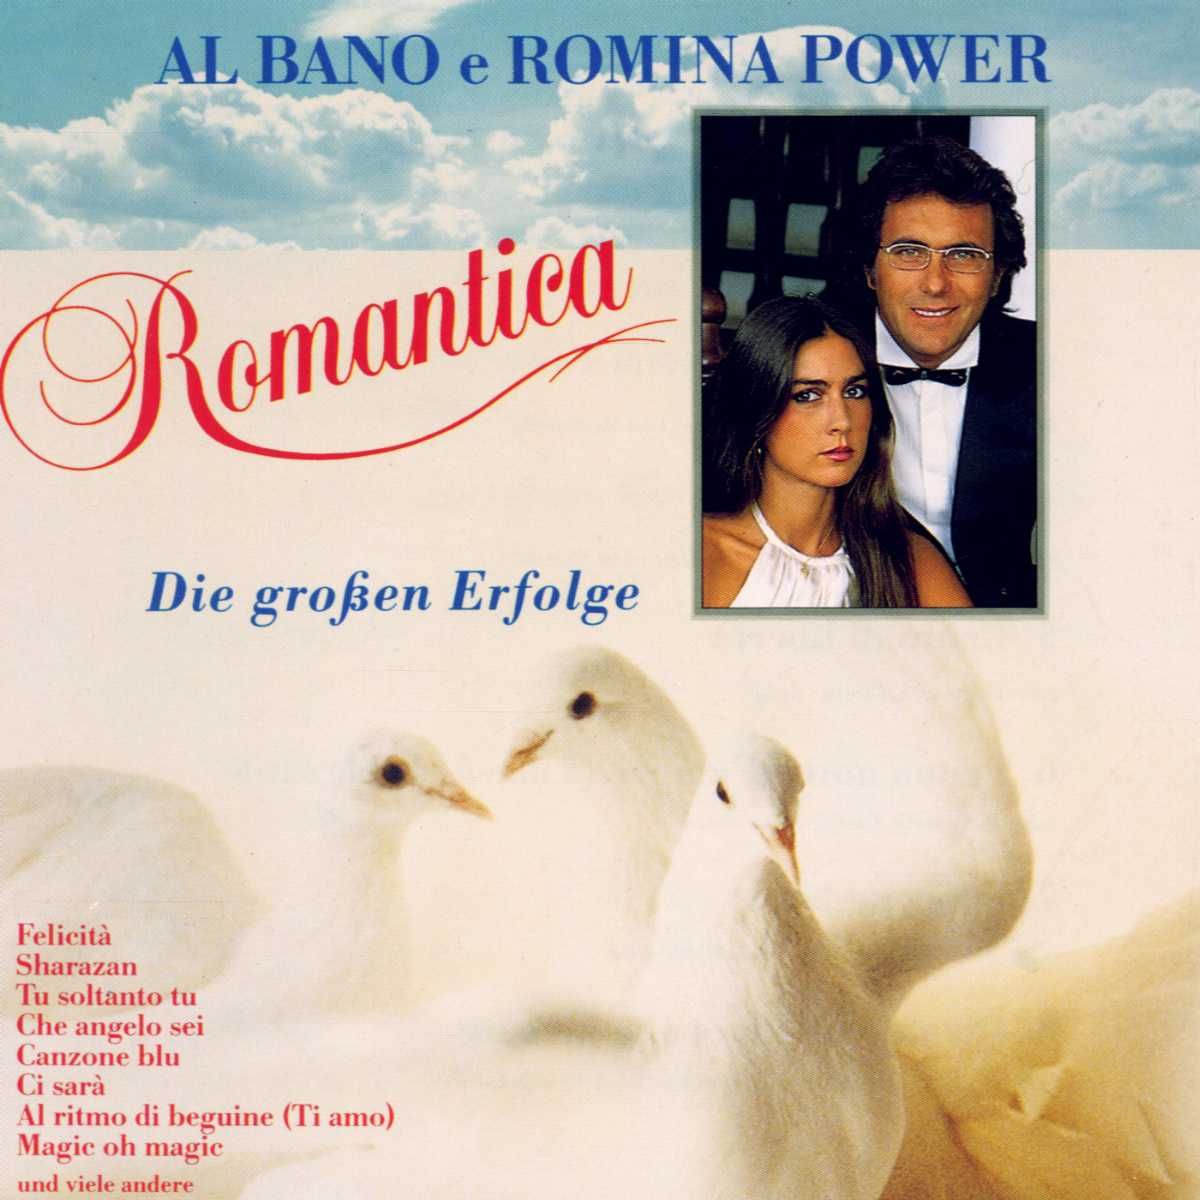 Al Bano & Romina Power - Romantica - Die großen Erfolge 